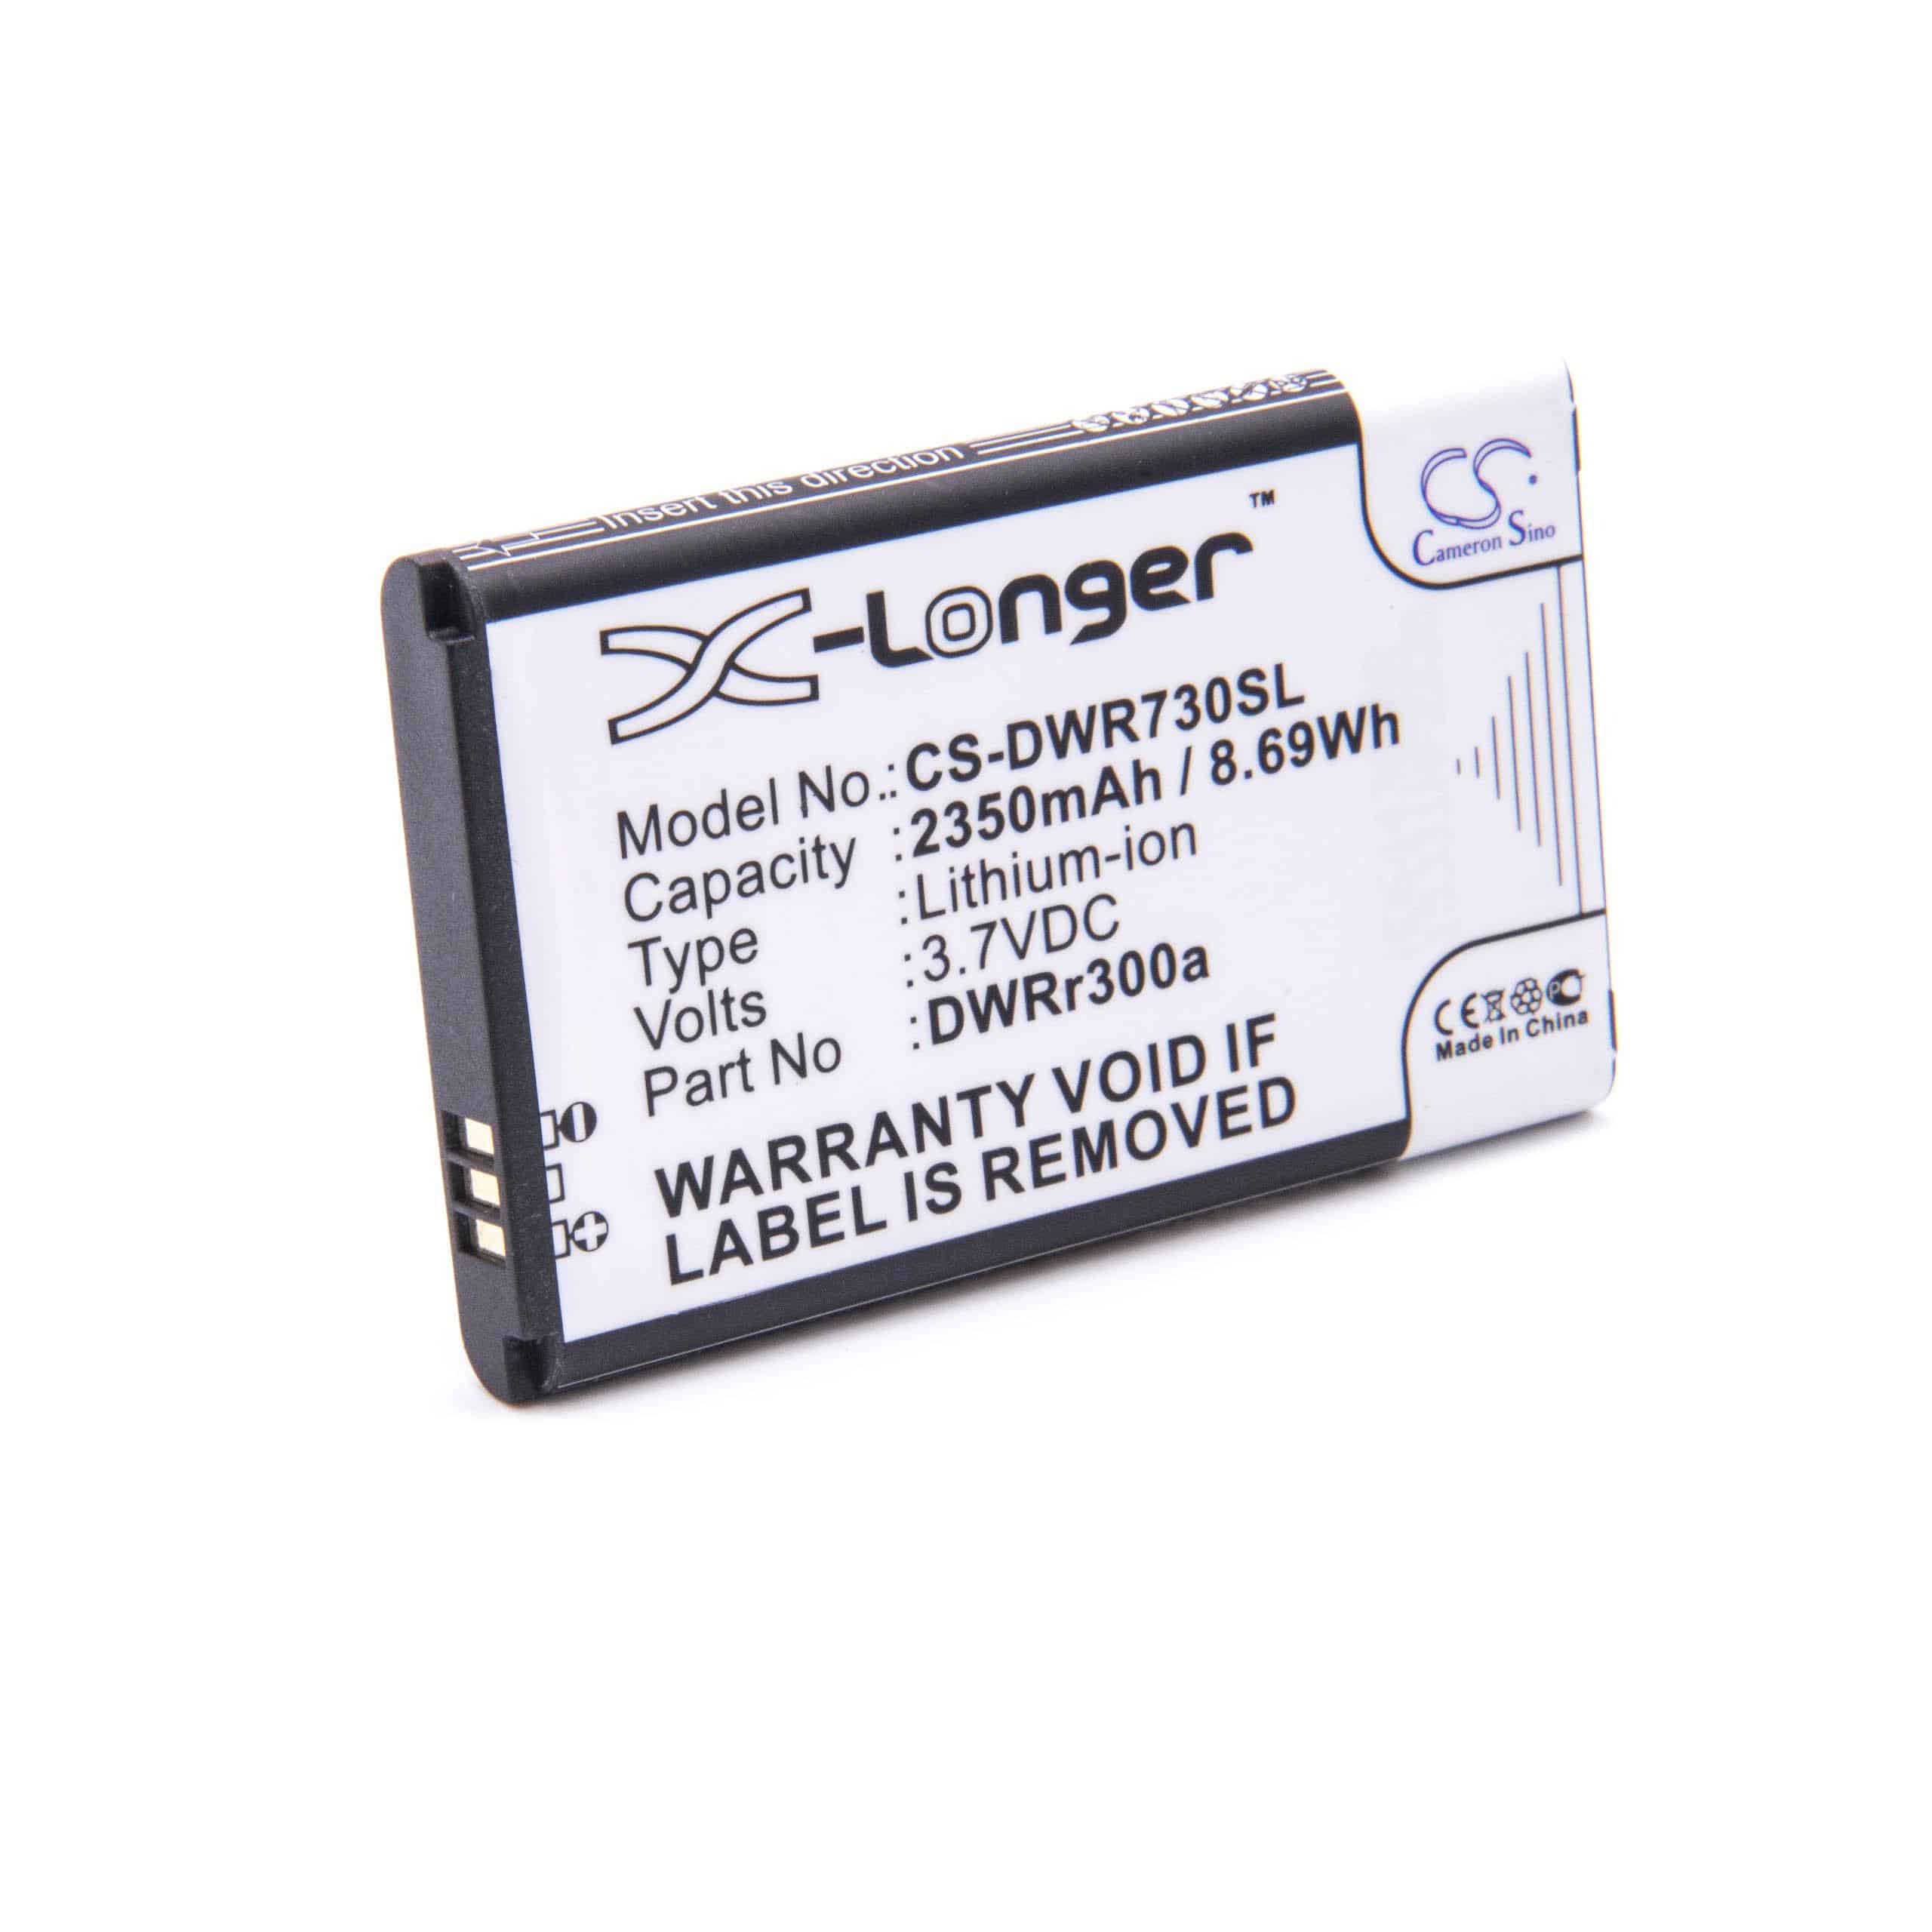 Batterie remplace D-Link DWR300a, 6BT-R300A-291, 6BT-R600B-2902 pour routeur modem - 2350mAh 3,7V Li-ion